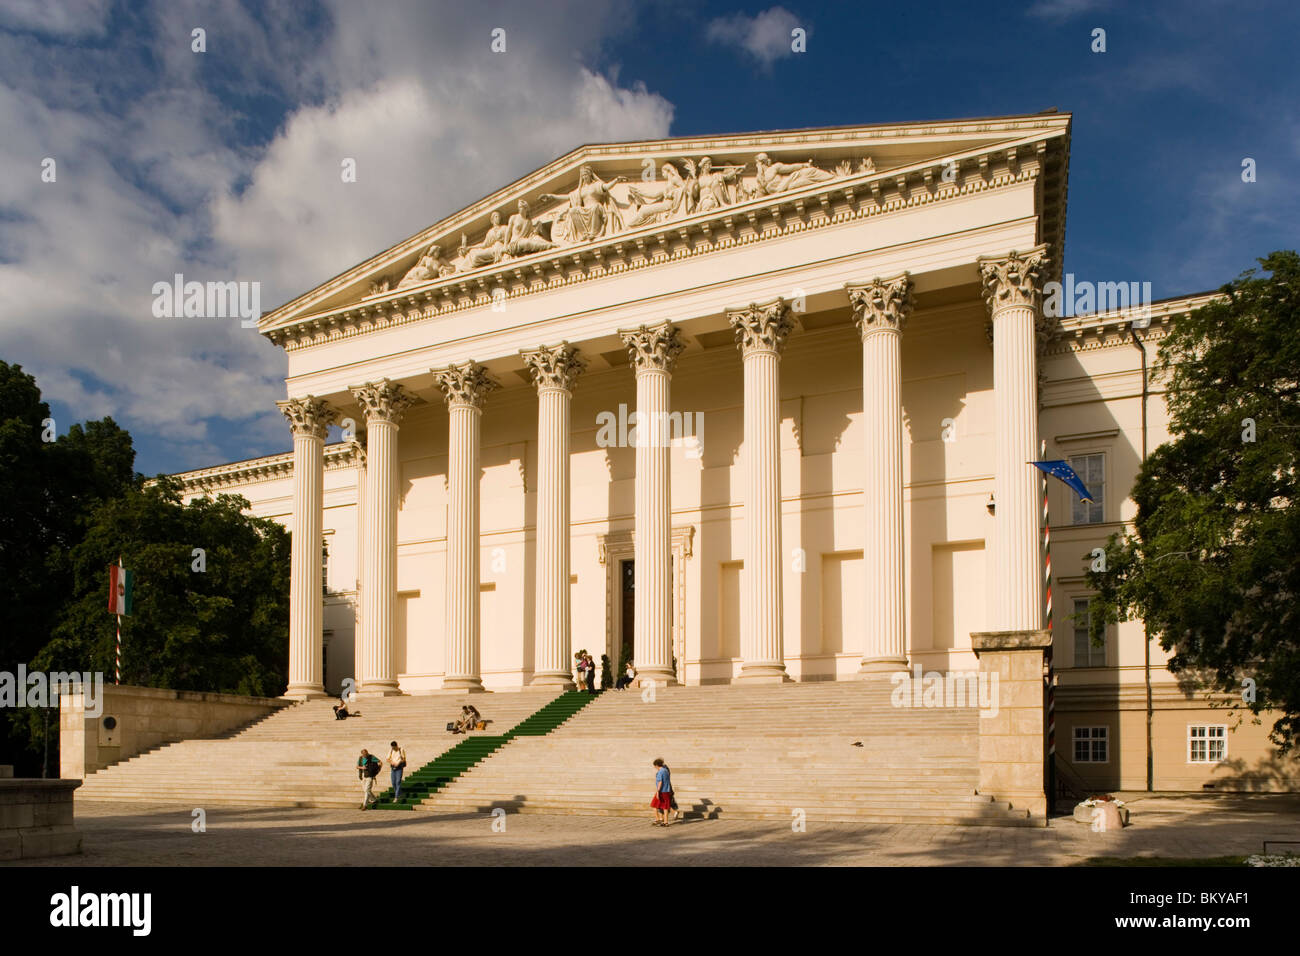 Ungarisches Nationalmuseum, Blick auf den Haupteingang des ungarischen Nationalmuseums, Pest, Budapest, Ungarn Stockfoto